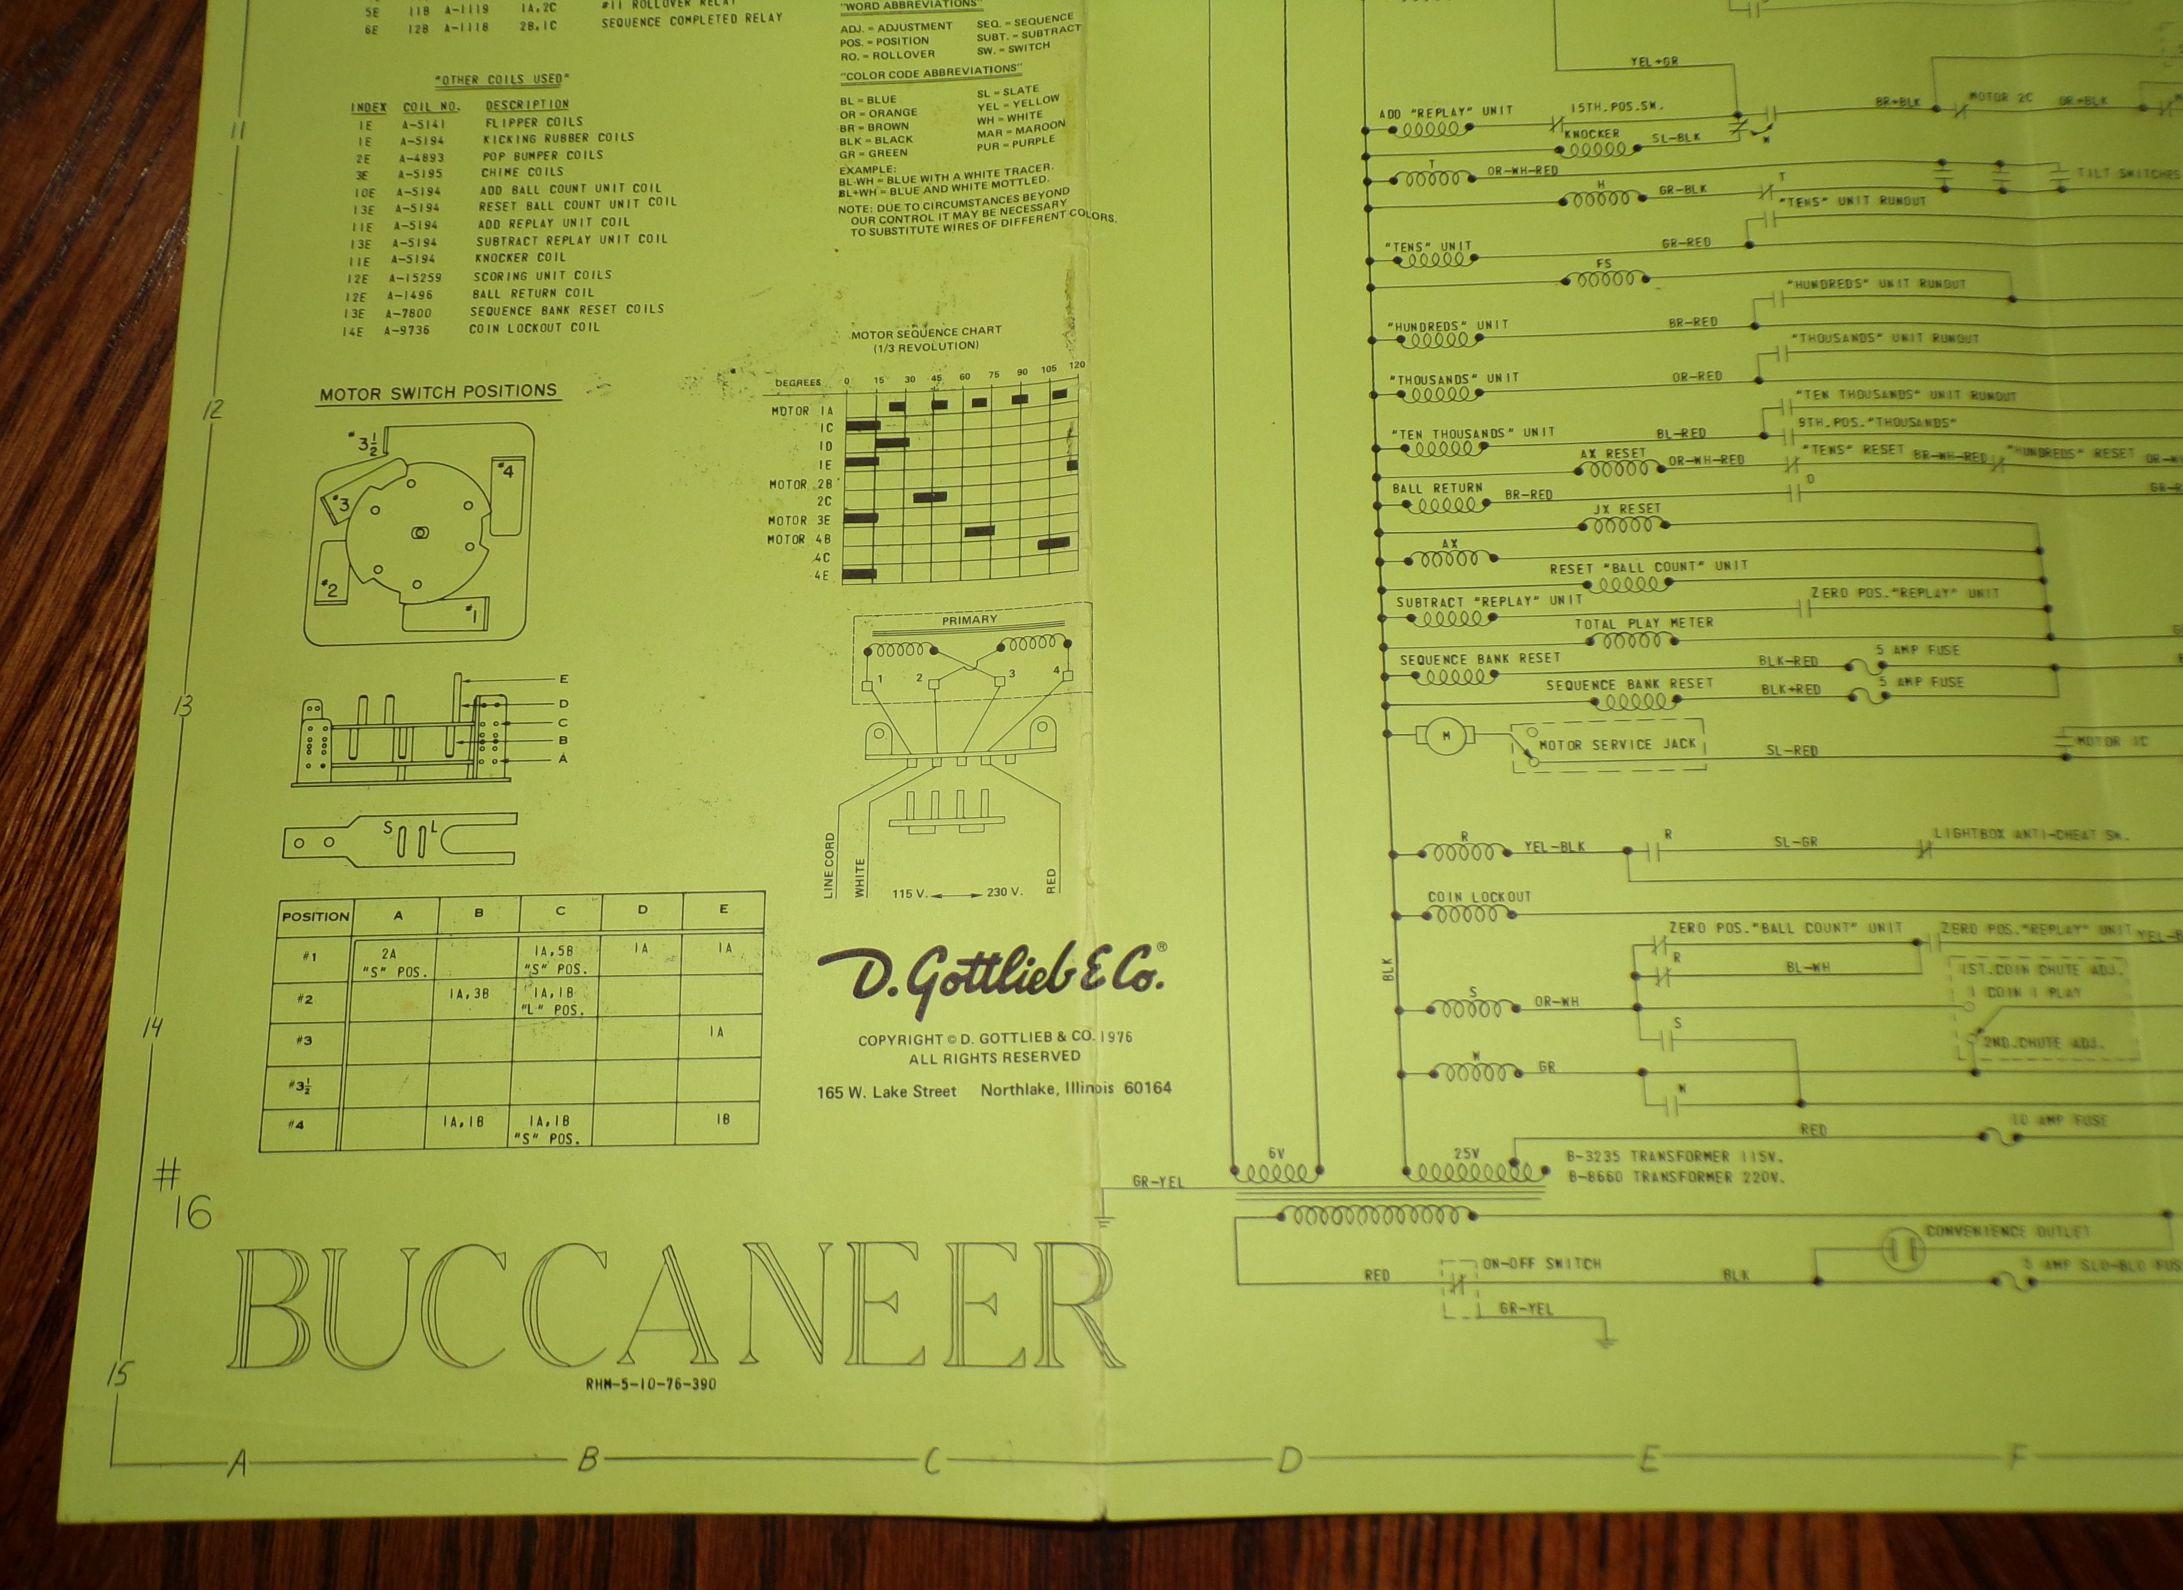 1976 D. Gottlieg & Co. "Buccaneer" Pinball Machine